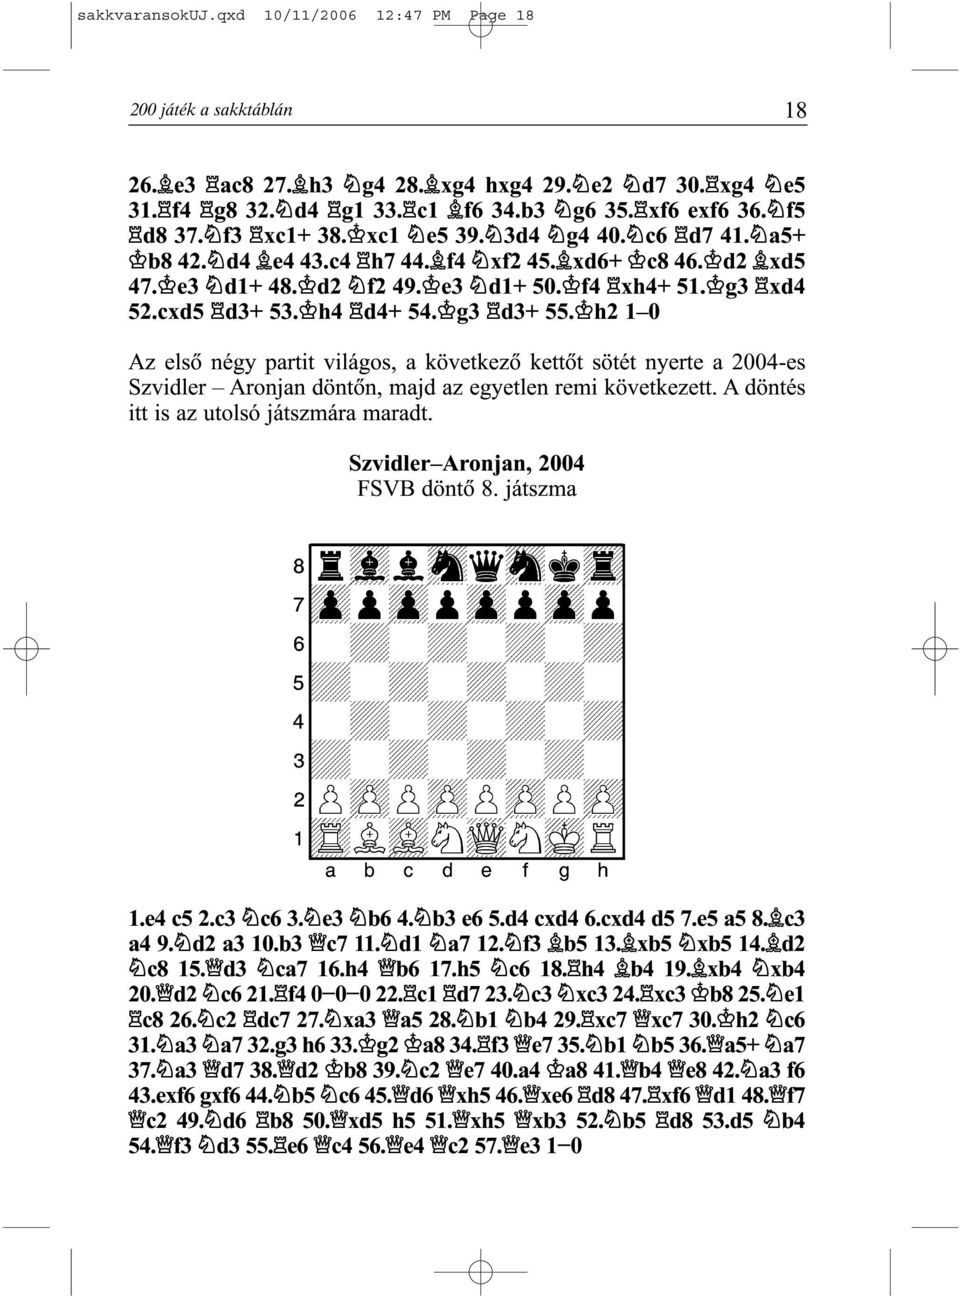 h2 1 0 Az elsõ négy partit világos, a következõ kettõt sötét nyerte a 2004-es Szvidler Aronjan döntõn, majd az egyetlen remi következett. A döntés itt is az utolsó játszmára maradt.